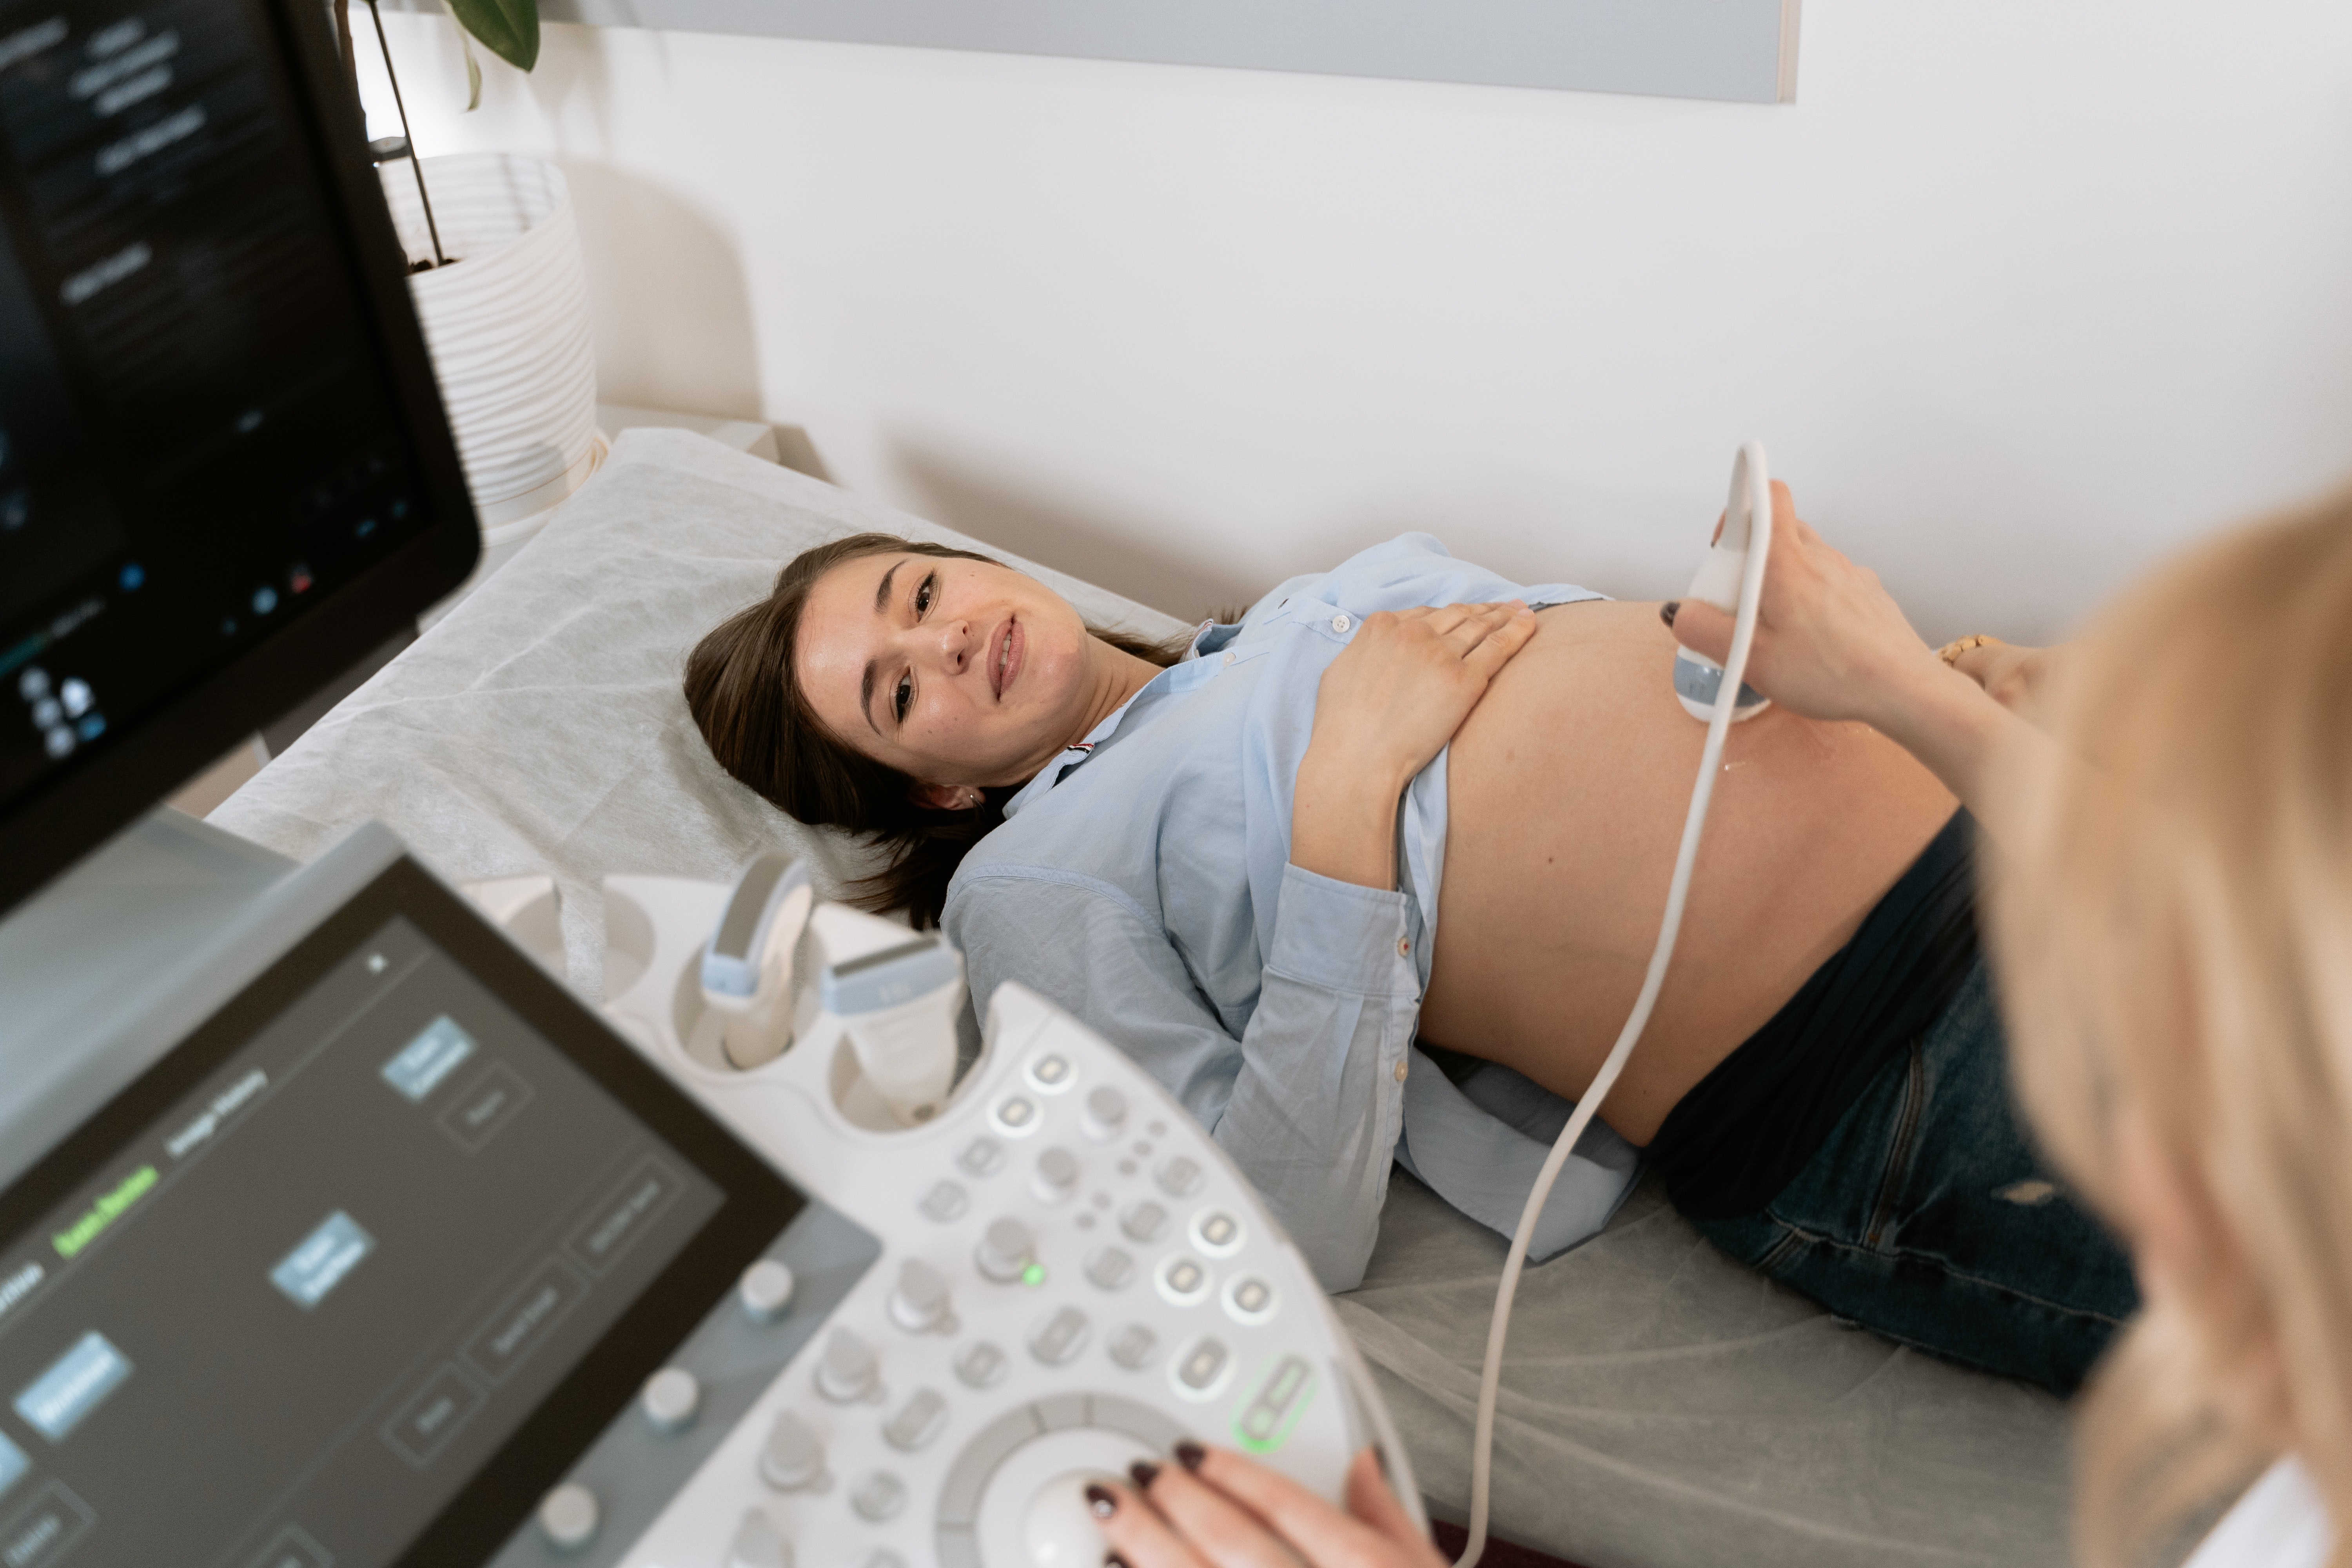  Kiểm tra thai sản không được coi là nghỉ ốm, lao động di trú cũng được hưởng chế độ thai sản trước và sau sinh. (Ảnh minh họa: kho ảnh Pixabay)